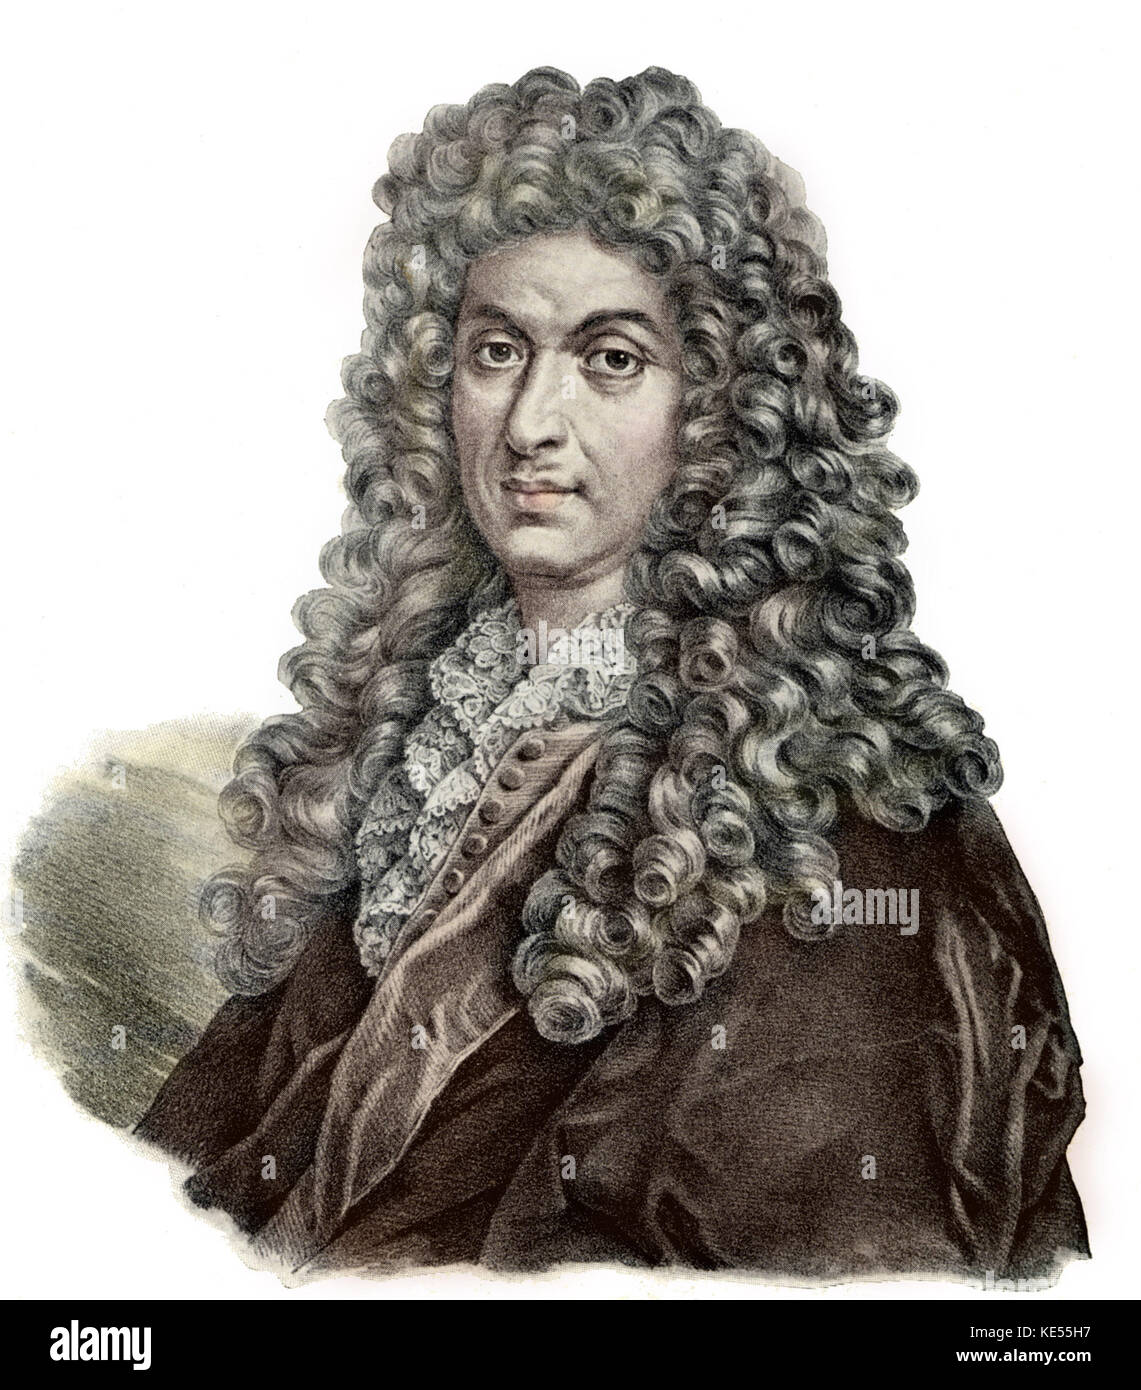 Jean Baptiste de Lully, portrait. Compositeur franco-italienne, 1632-1687. Version colorisée. Banque D'Images